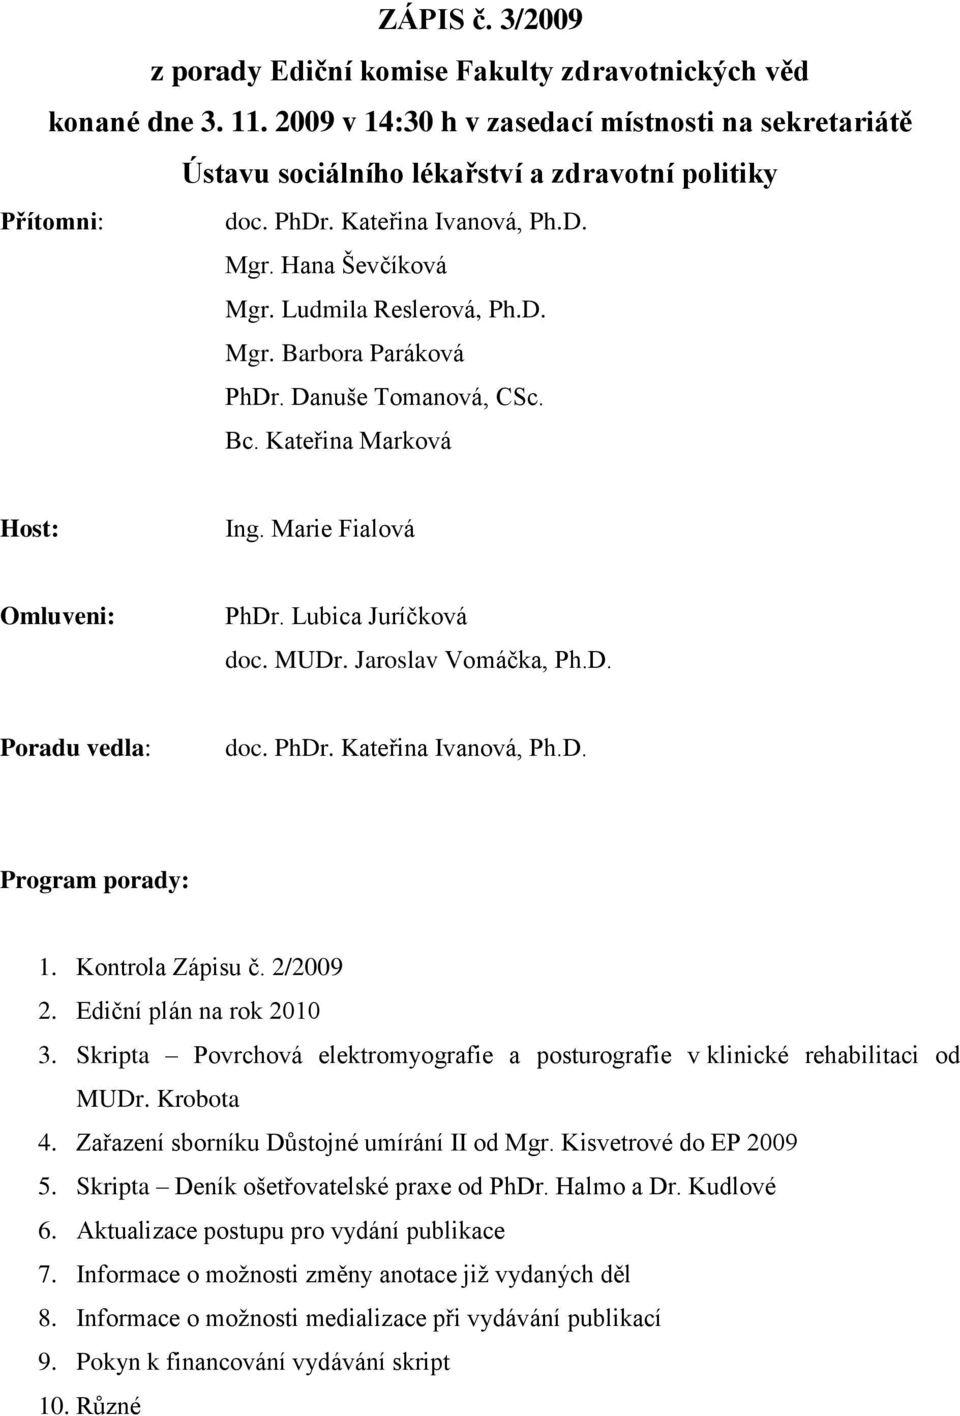 Lubica Juríčková doc. MUDr. Jaroslav Vomáčka, Ph.D. Poradu vedla: doc. PhDr. Kateřina Ivanová, Ph.D. Program porady: 1. Kontrola Zápisu č. 2/2009 2. Ediční plán na rok 2010 3.